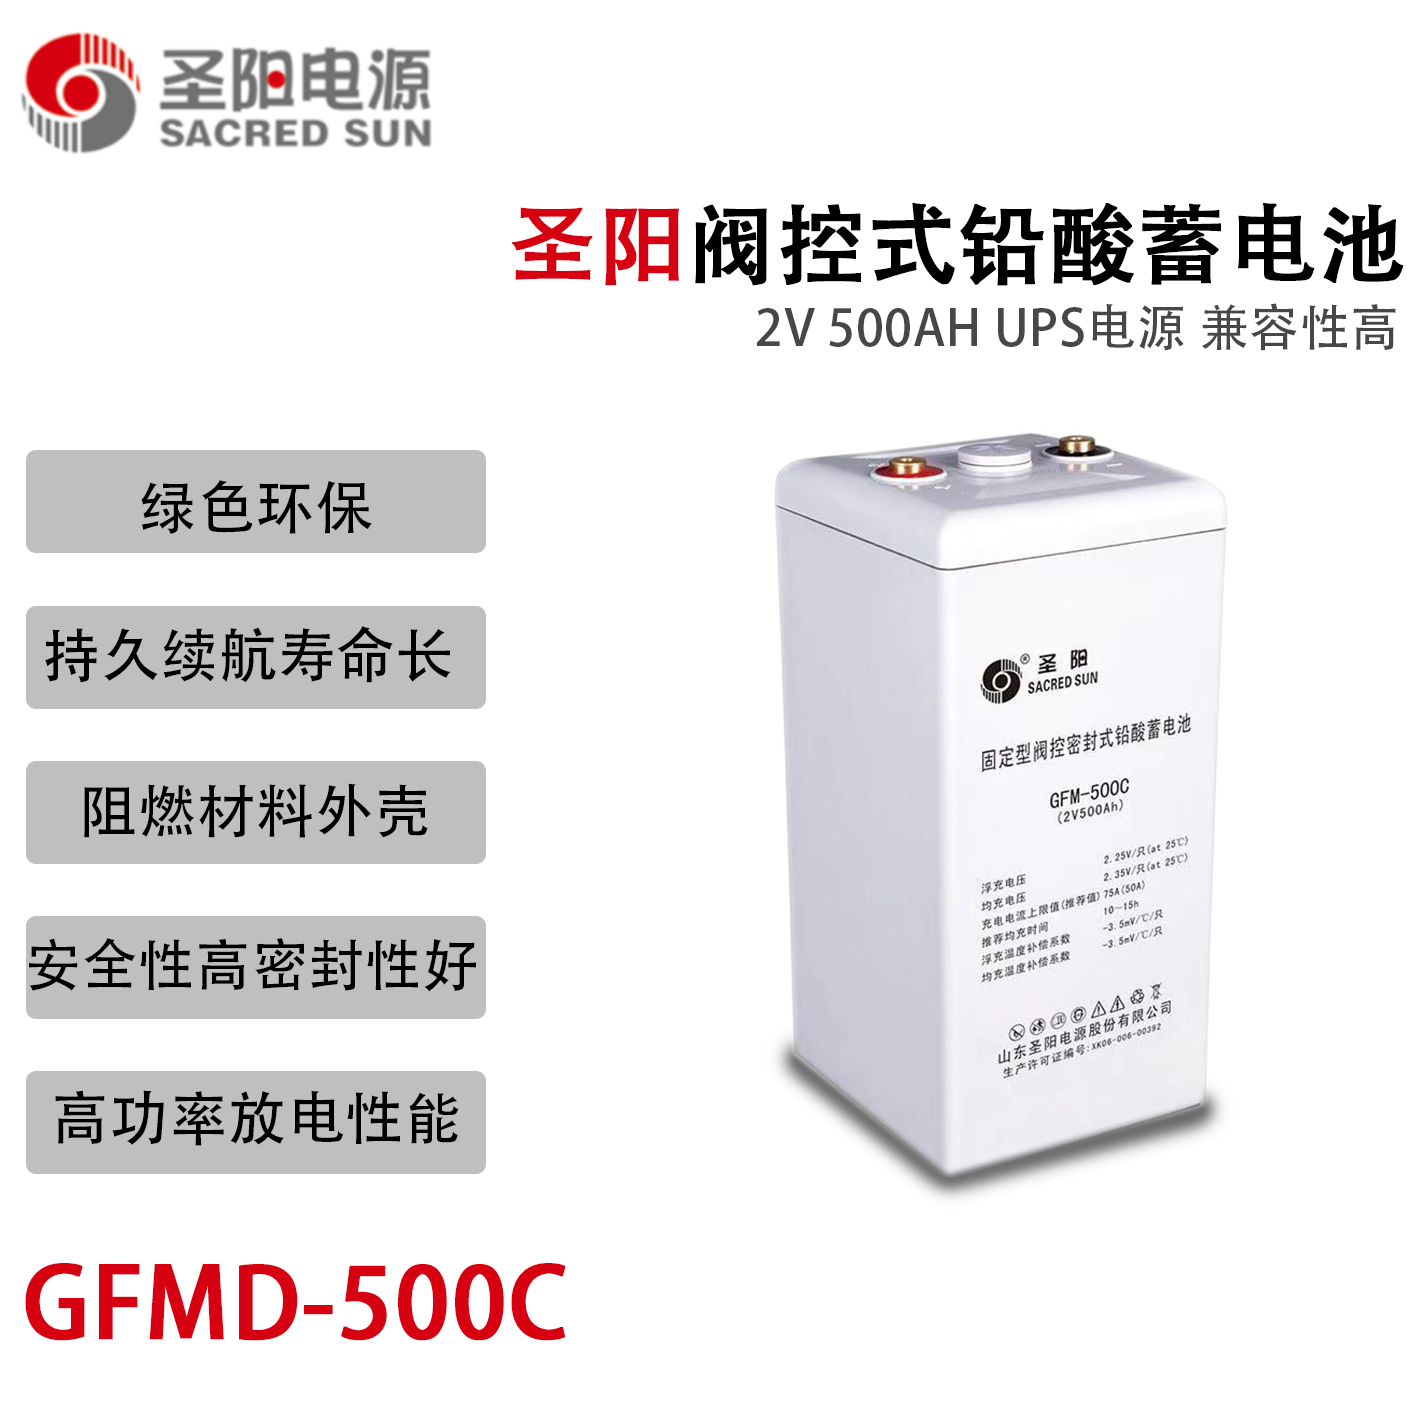 圣阳GFMD-500C 2V500AH 铅酸蓄电池 免维护 持久续航UPS不间断电源